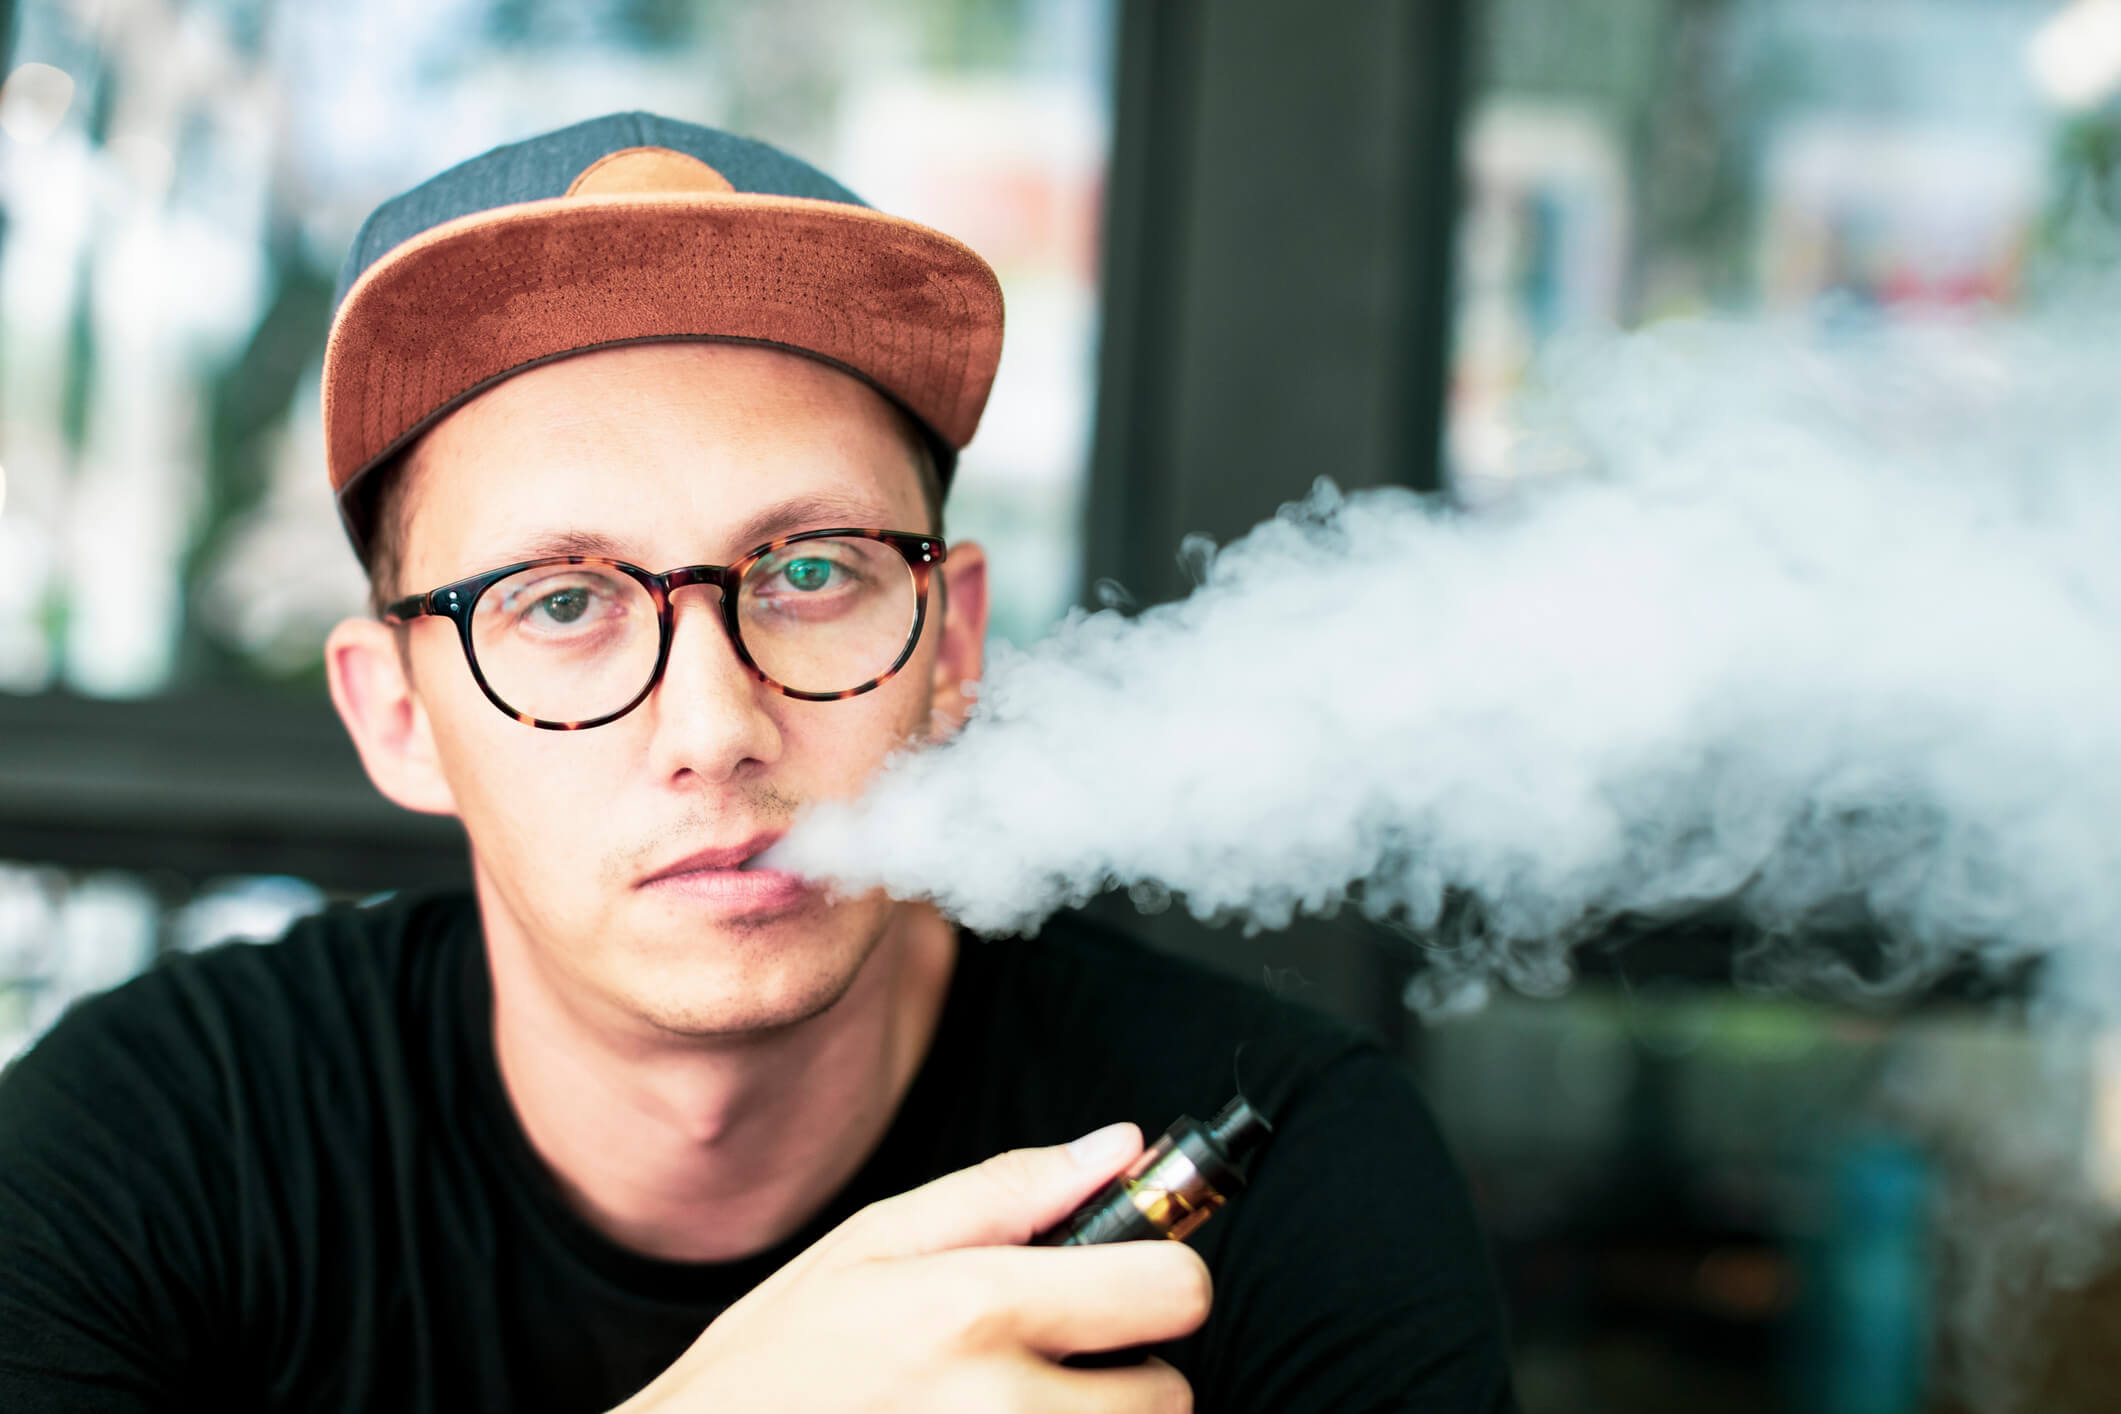 Raucher zahlen drauf: Für E-Zigaretten gilt jetzt die Tabaksteuer